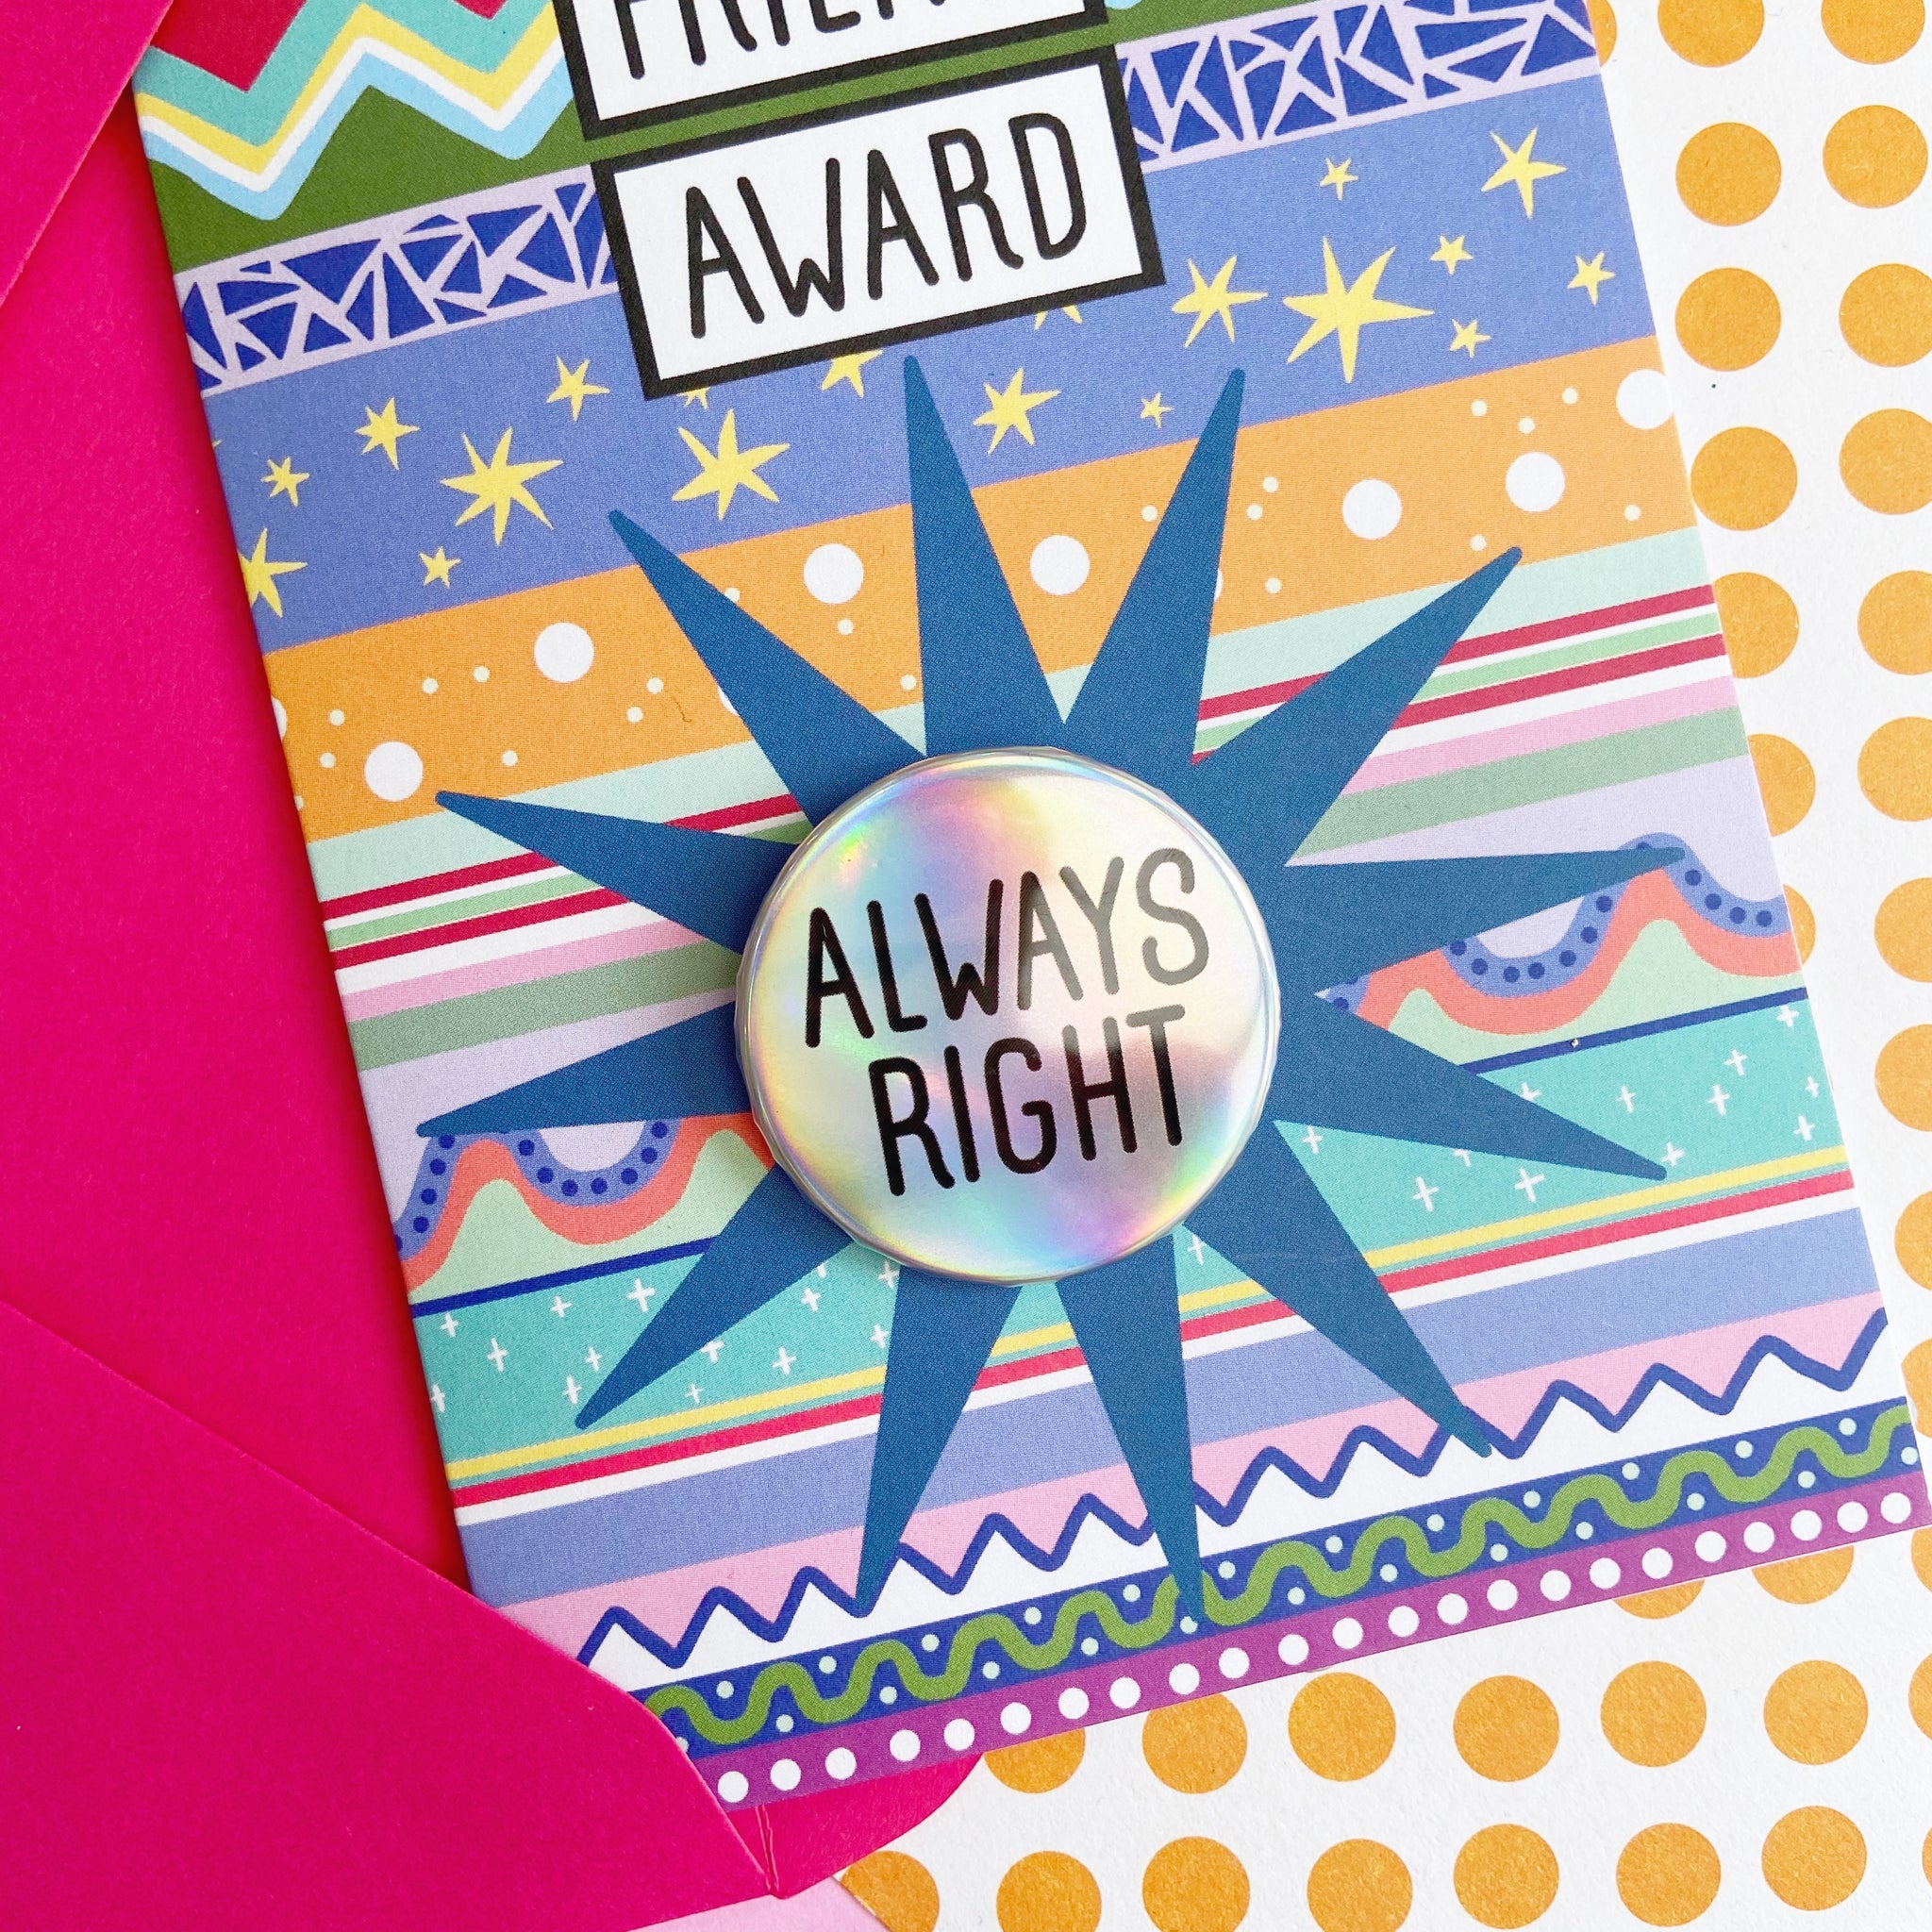 Always Right - Friend Award Card